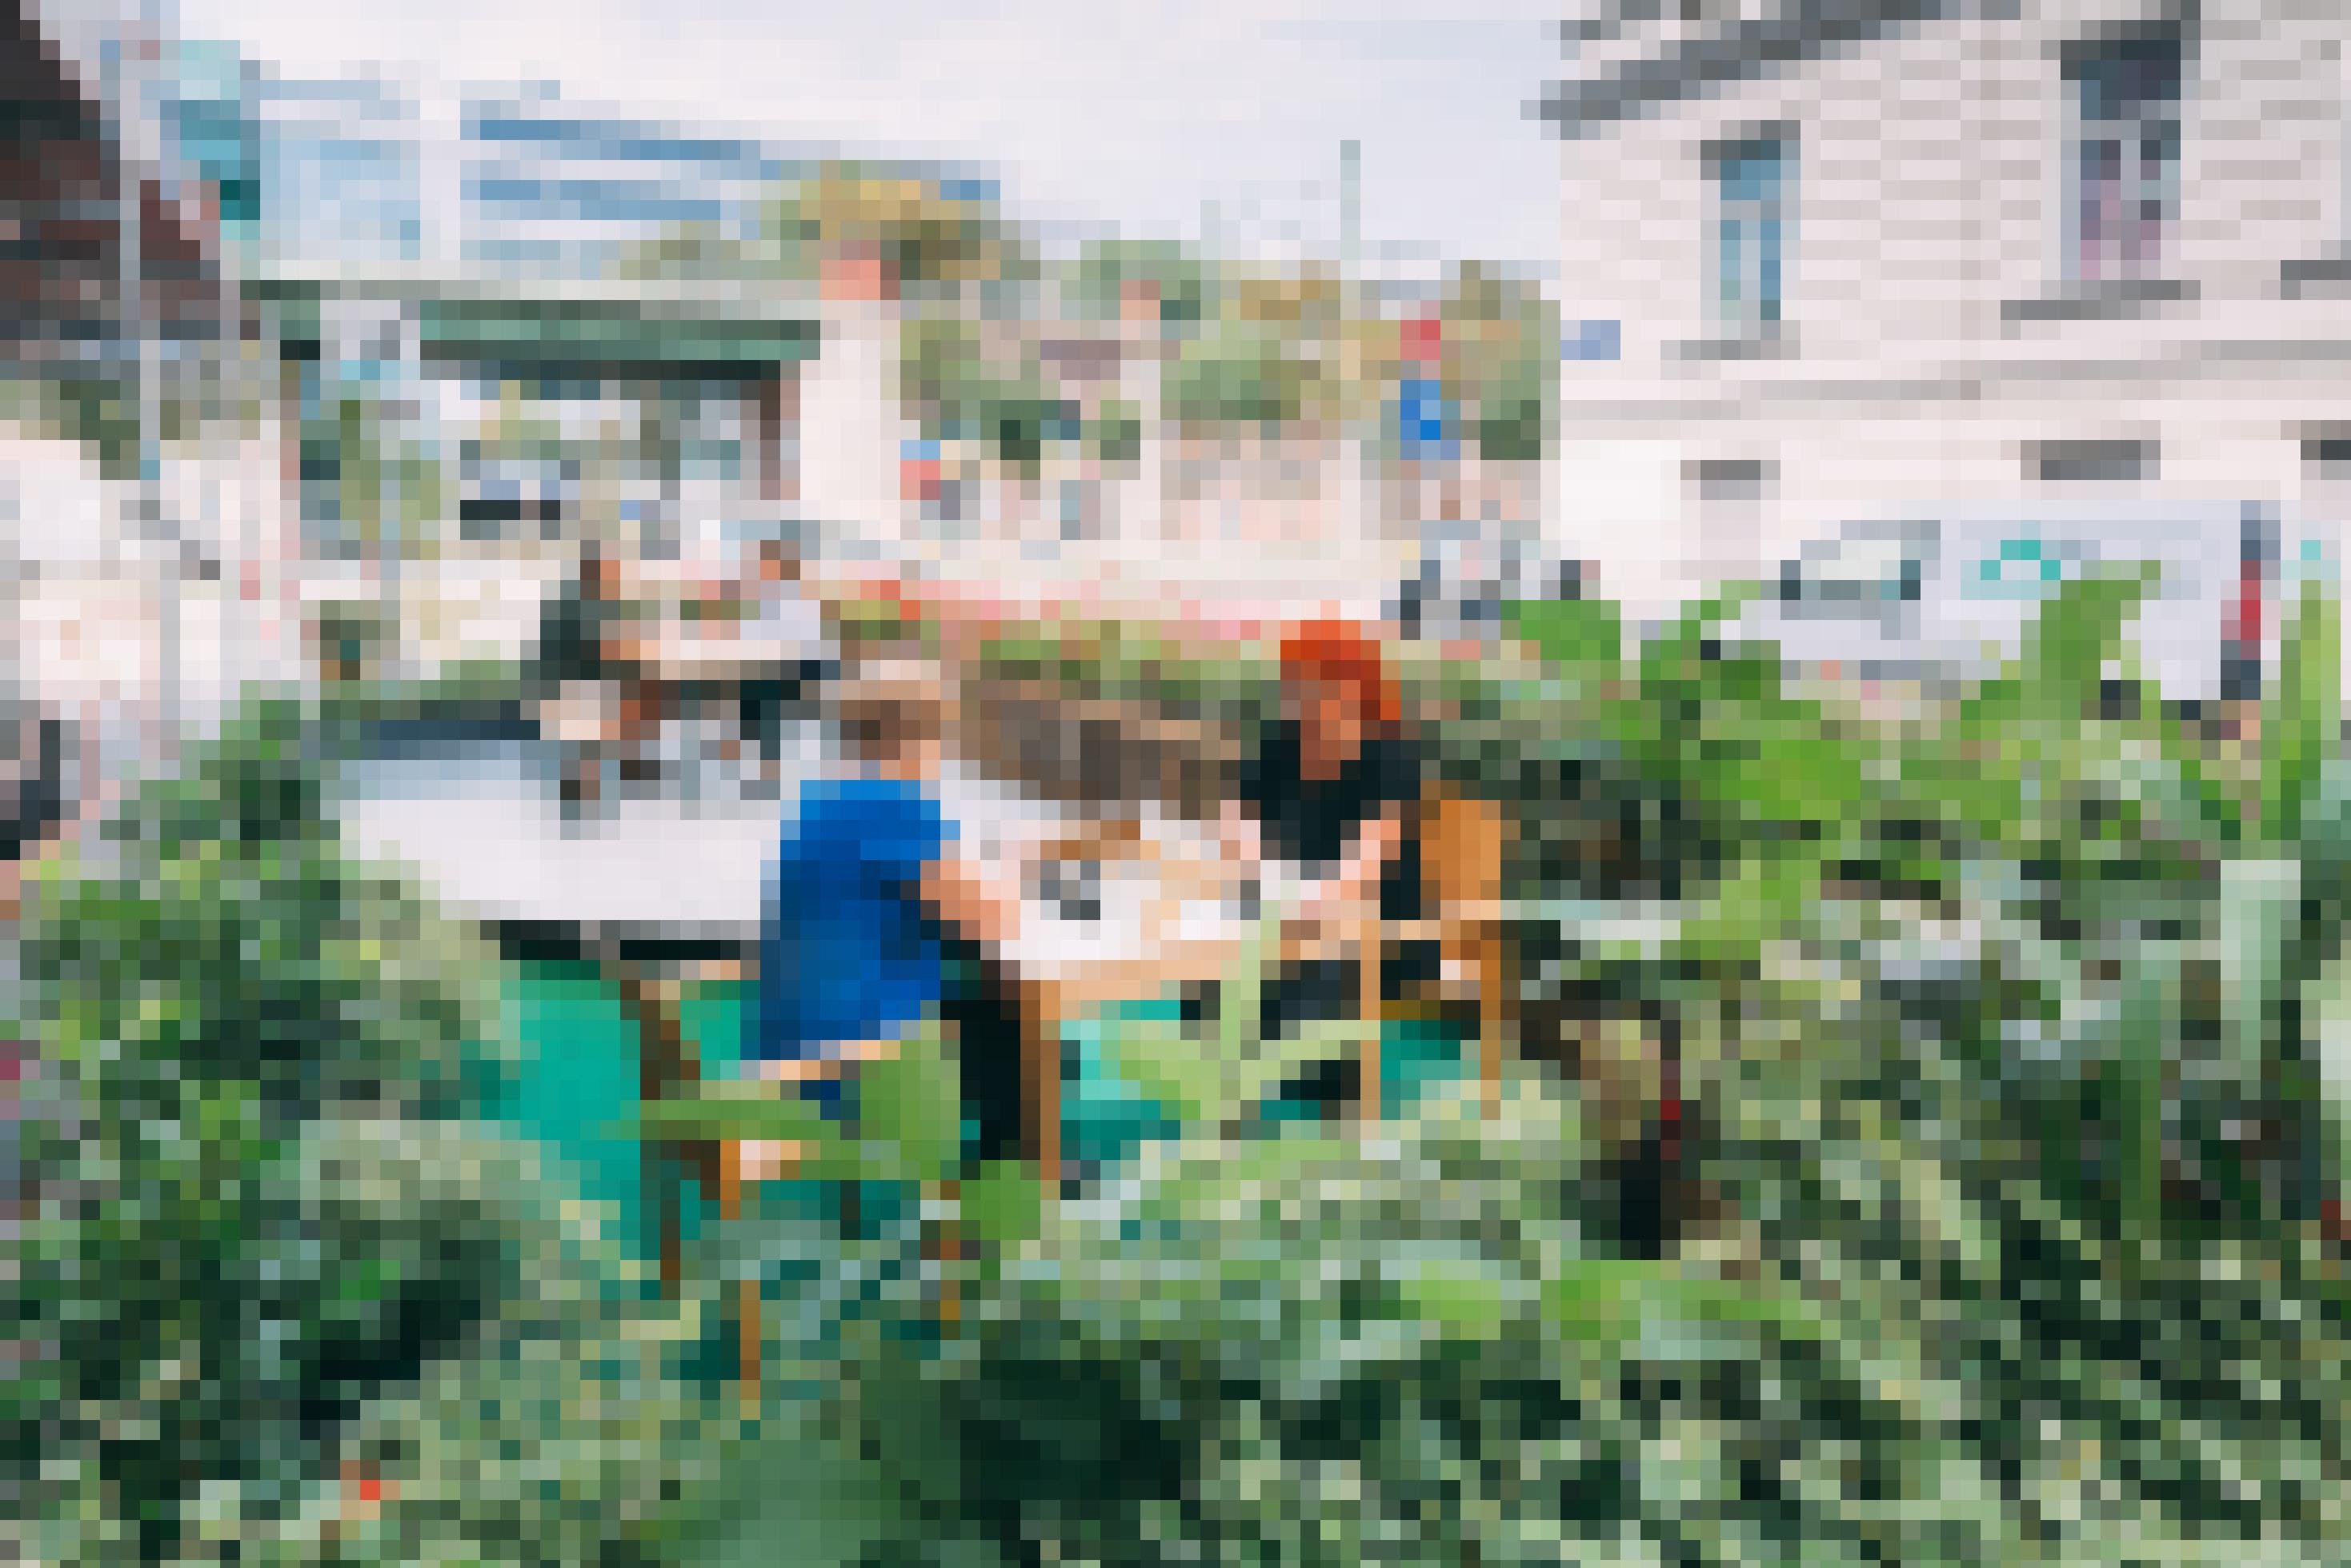 Auf den Parkplatz wurde eine Terrasse gebaut, die mit Blumen und Grünpflanzen eingefasst ist. An einem Tisch spielen zwei Frauen Schach, an einem anderen Tisch unterhält sich ein Paar.